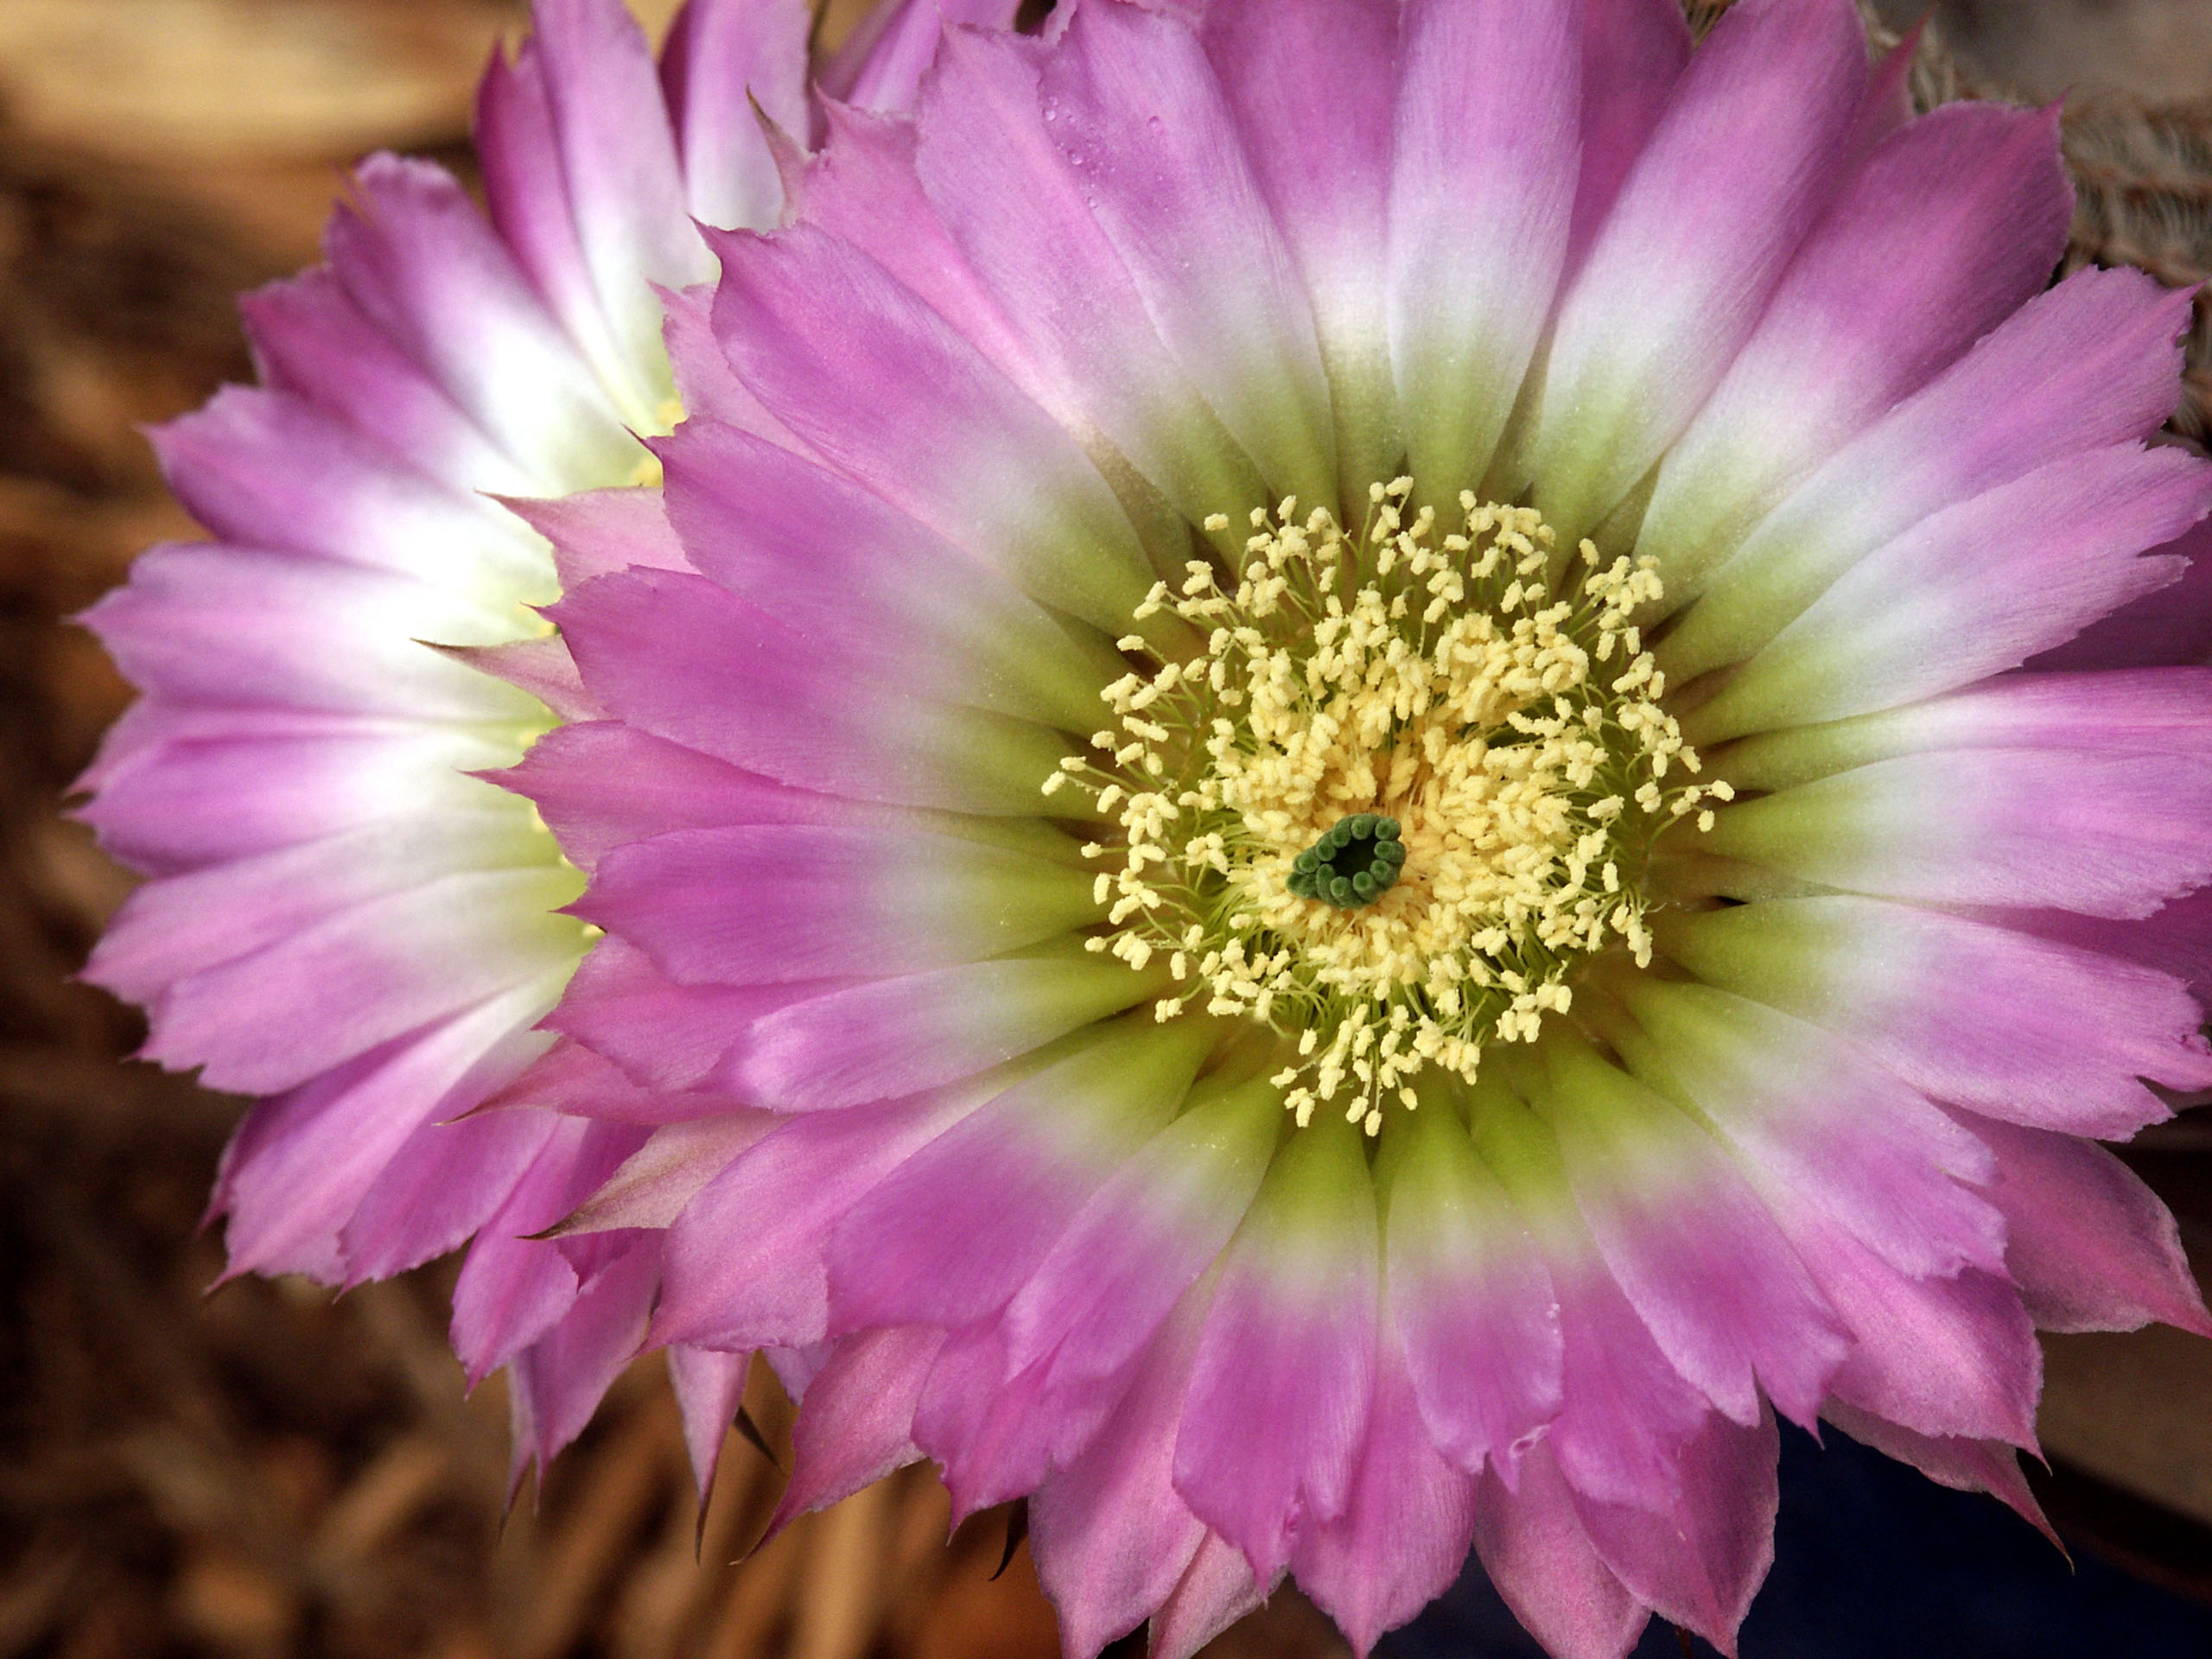 Cactus_flower01